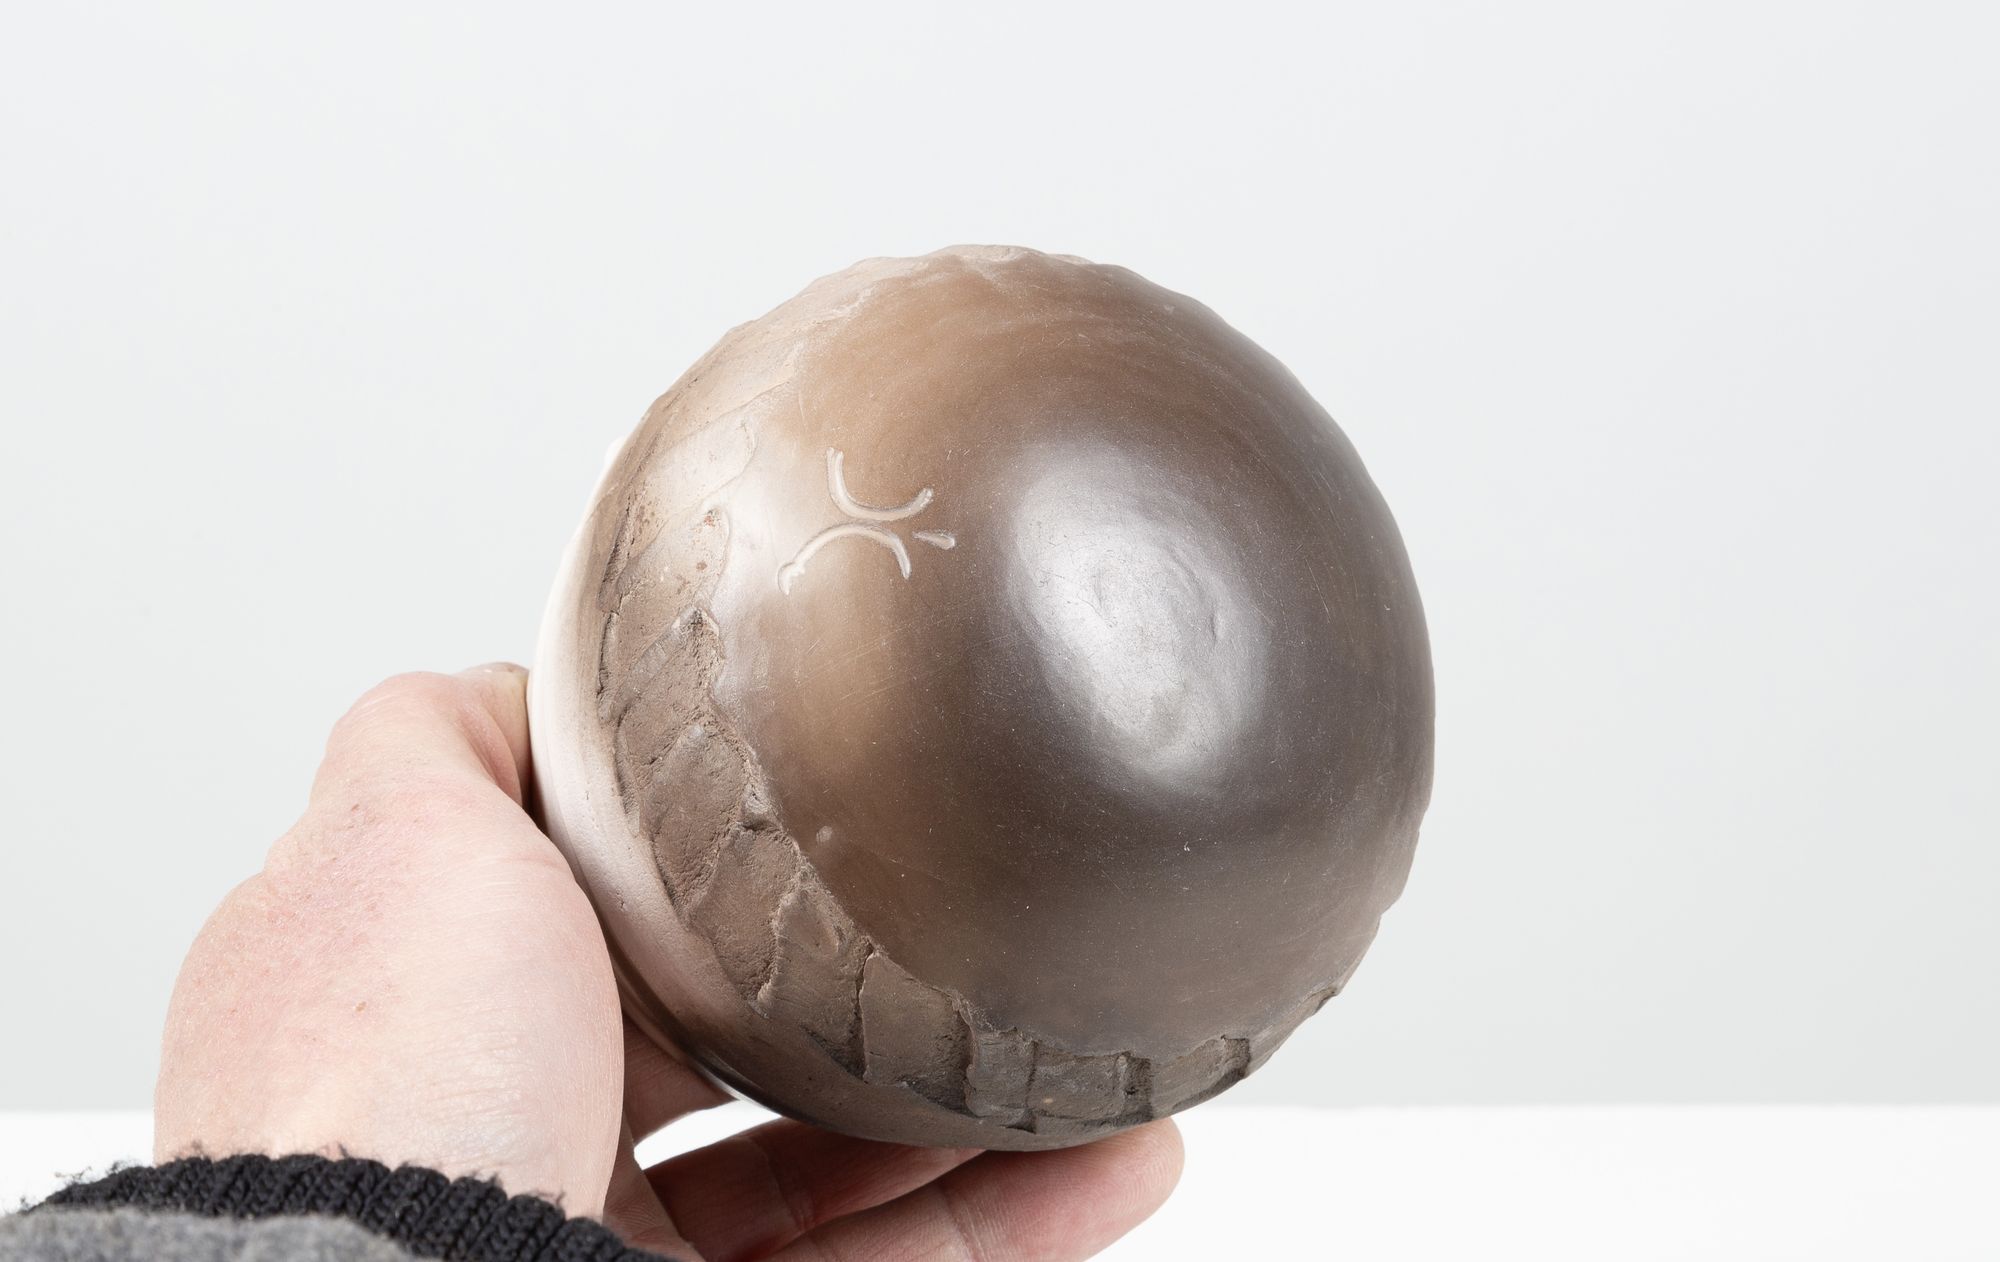 Bowl by ceramist Denise Millet